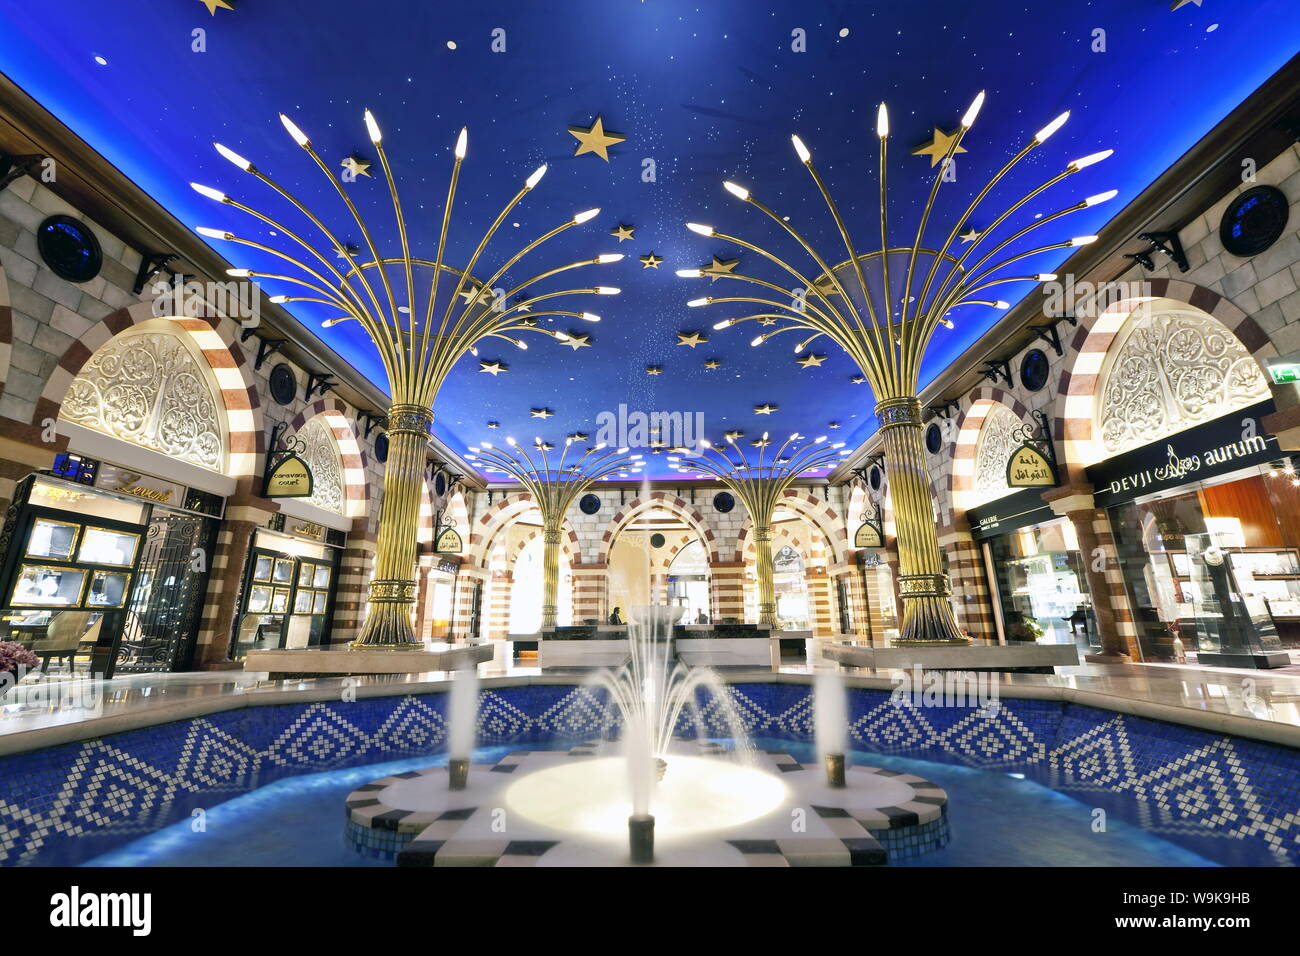 Gold Souk, Dubaï Mall, le plus grand centre commercial du monde avec 1200 magasins, partie de la complexe Burj Khalifa, Dubai, Emirats Arabes Unis Banque D'Images